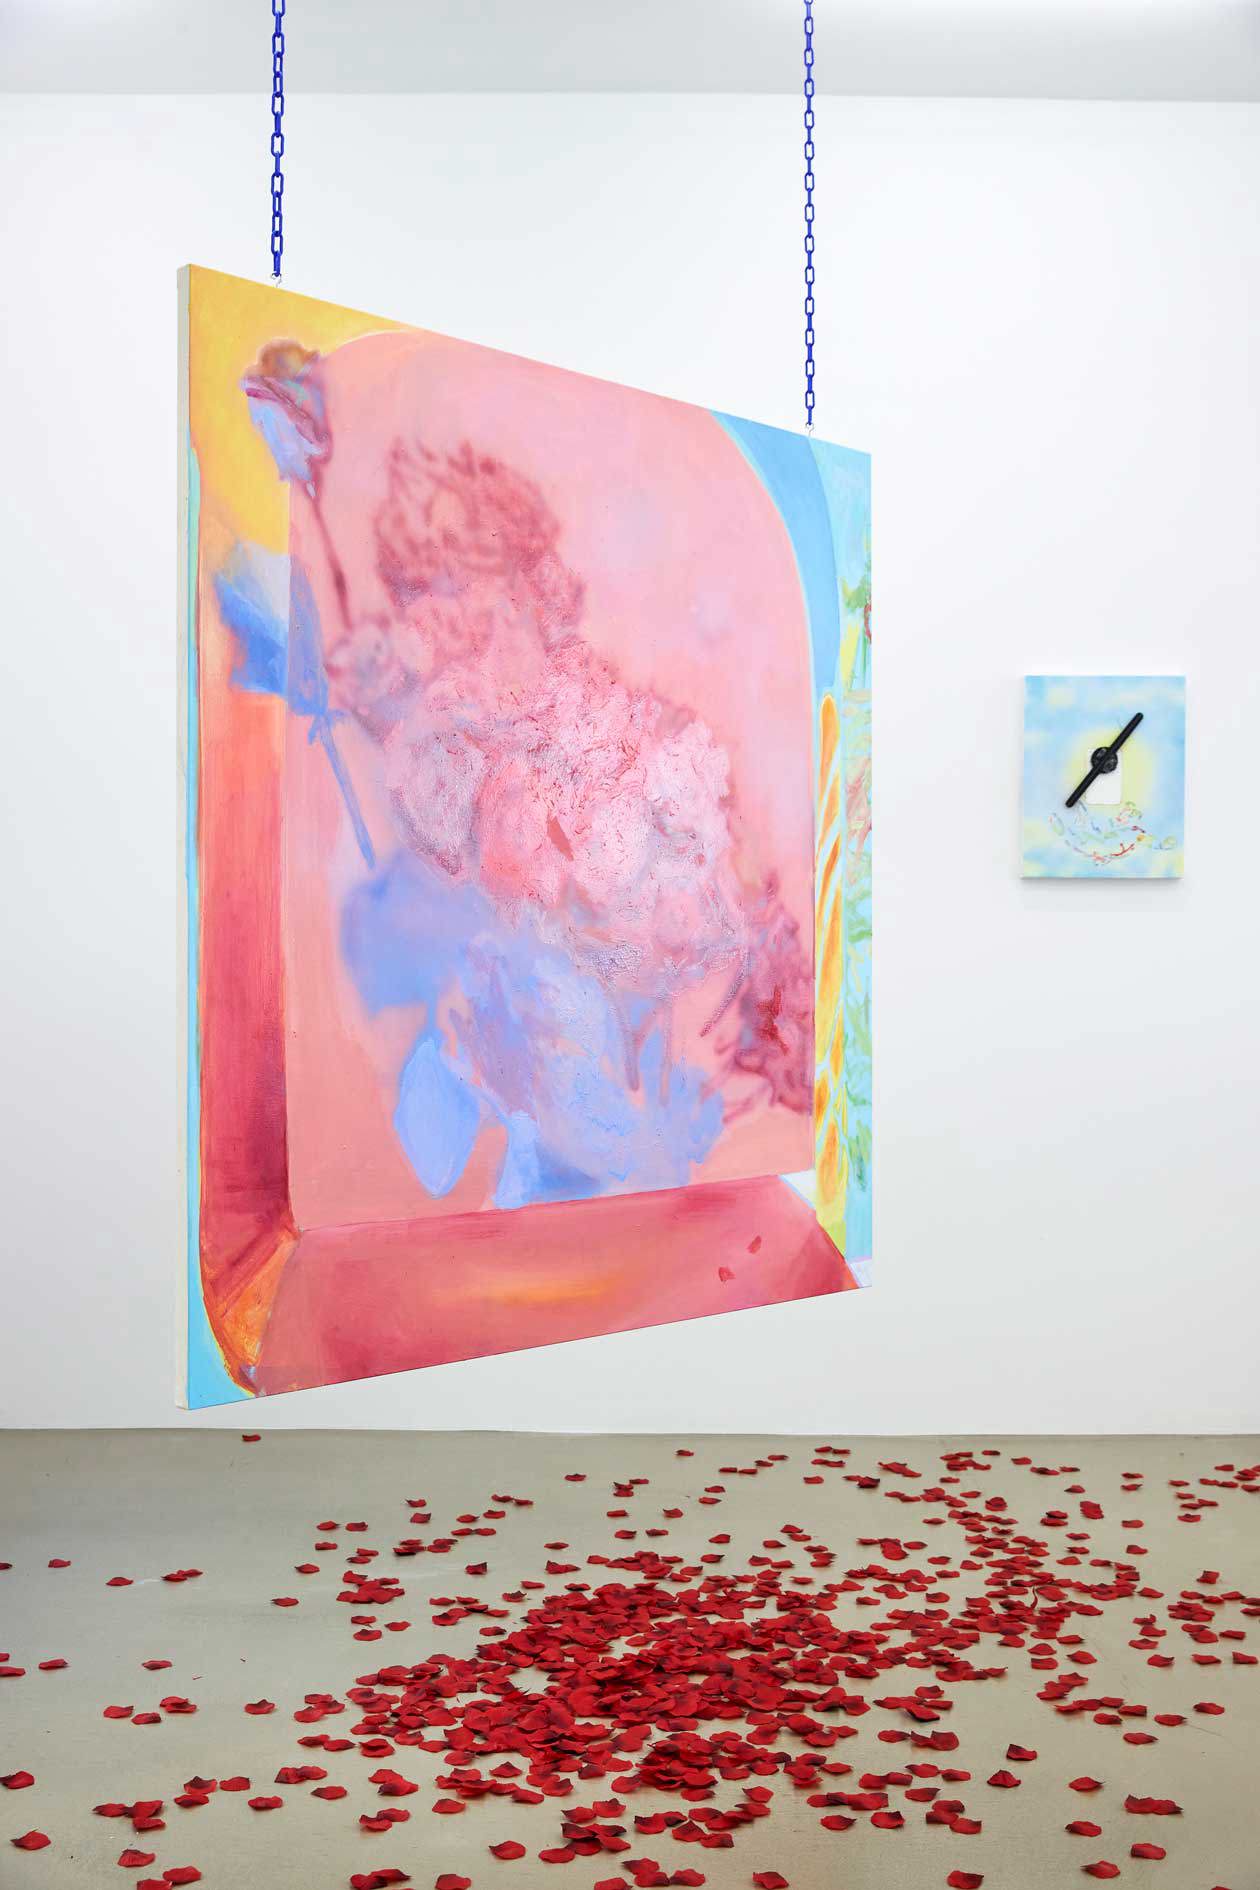 Rachel Rossin, Fat nuisance (forgetting), 2020, Aerografo e pittura ad olio su tela tesa in alluminio, cm 165 x 165. Foto: Volker Renner.